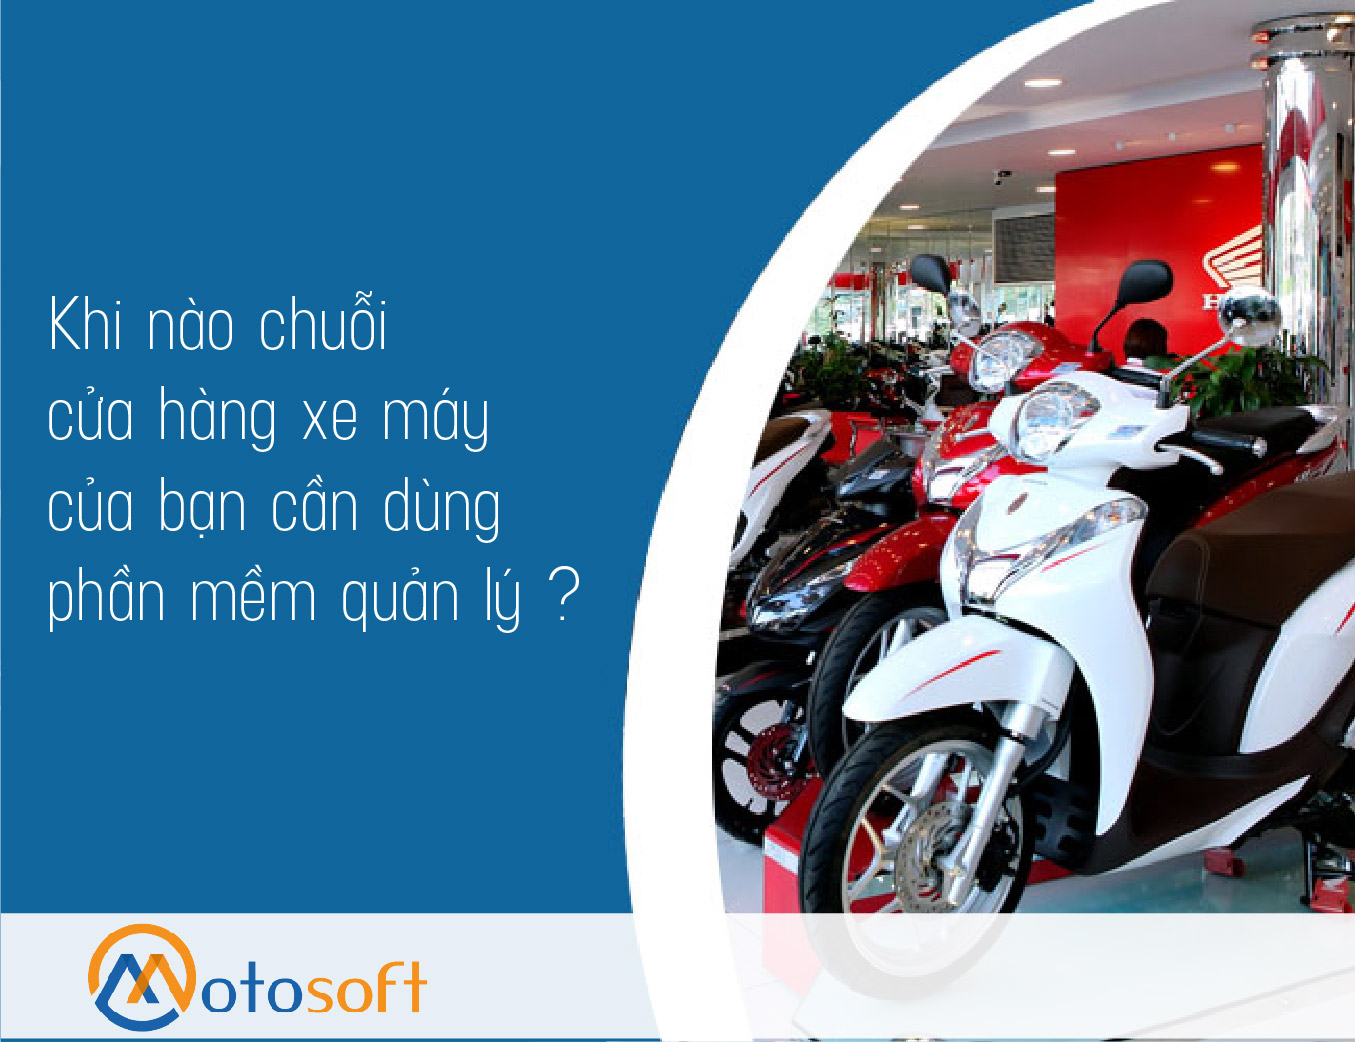 Thời điểm nào chuỗi cửa hàng xe máy của bạn cần sử dụng phần mềm Motosoft để quản lý ?